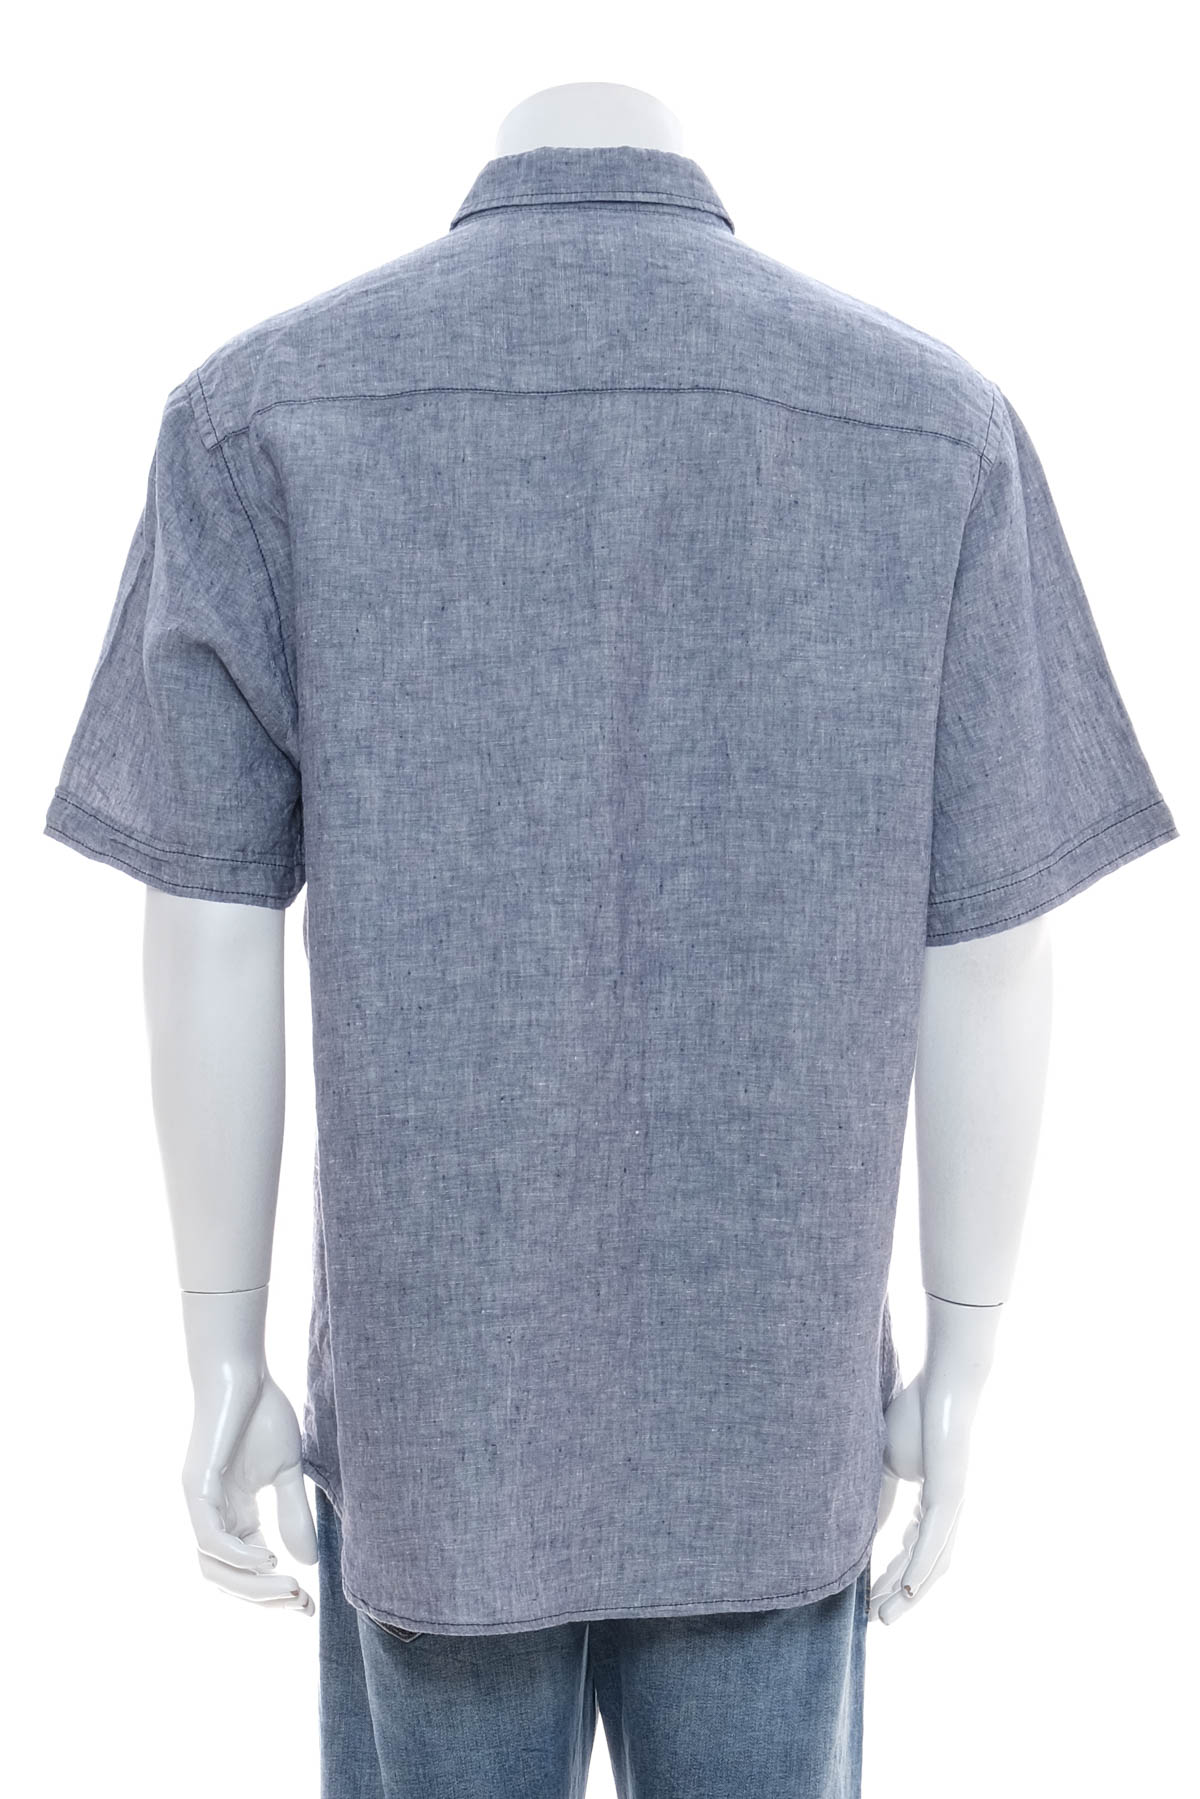 Ανδρικό πουκάμισο - Jean Carriere - 1